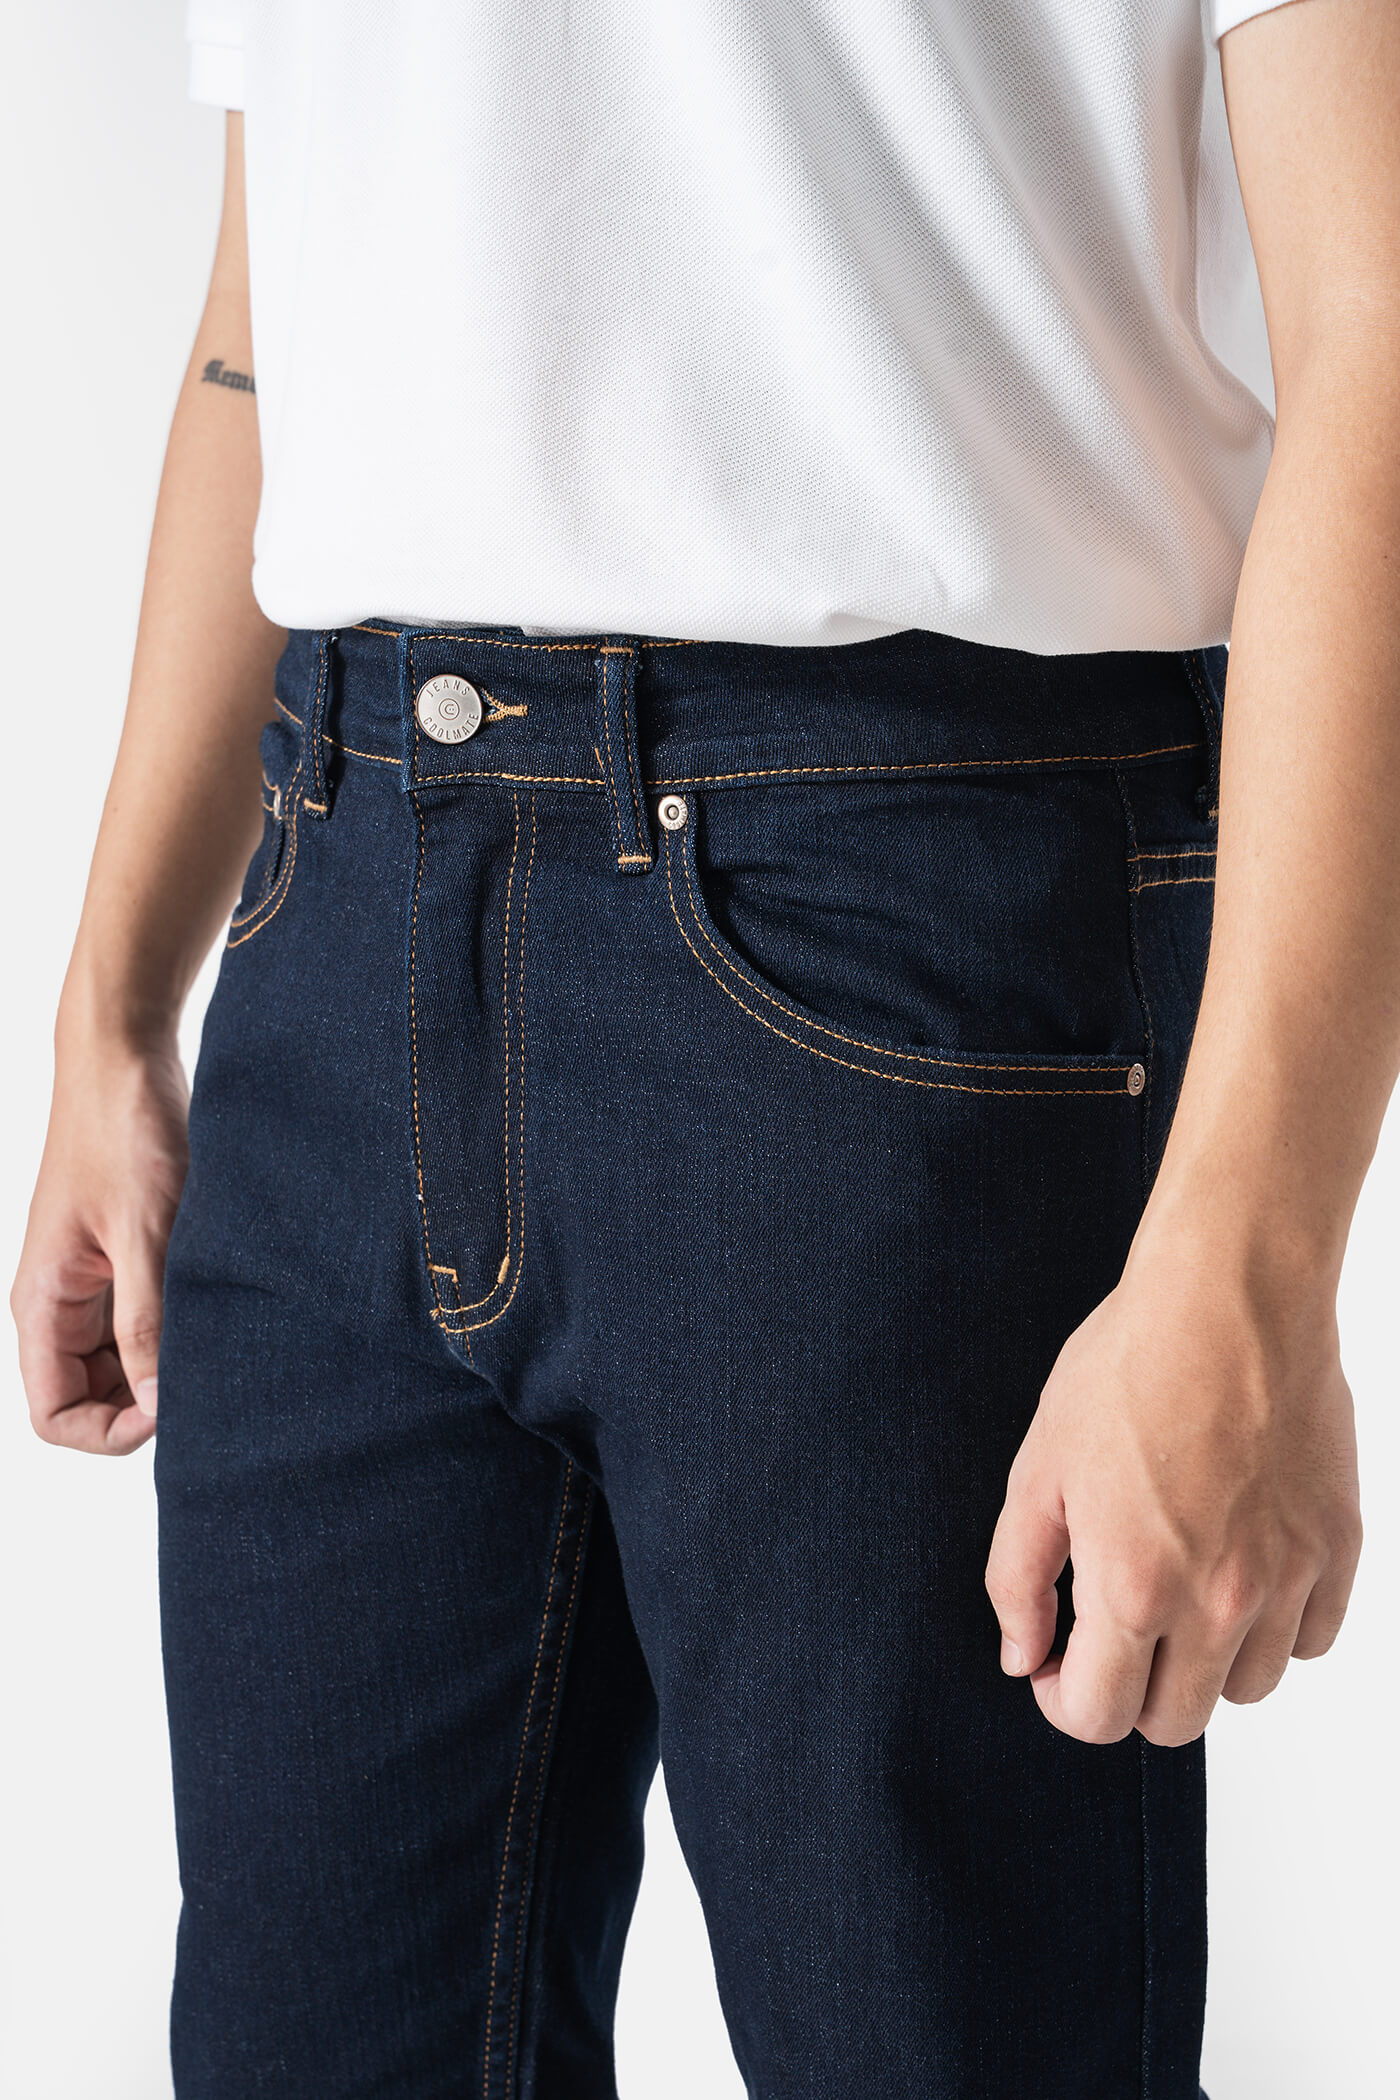 Quần Jeans Nam dáng Slim Fit V2 xanh-garment 2